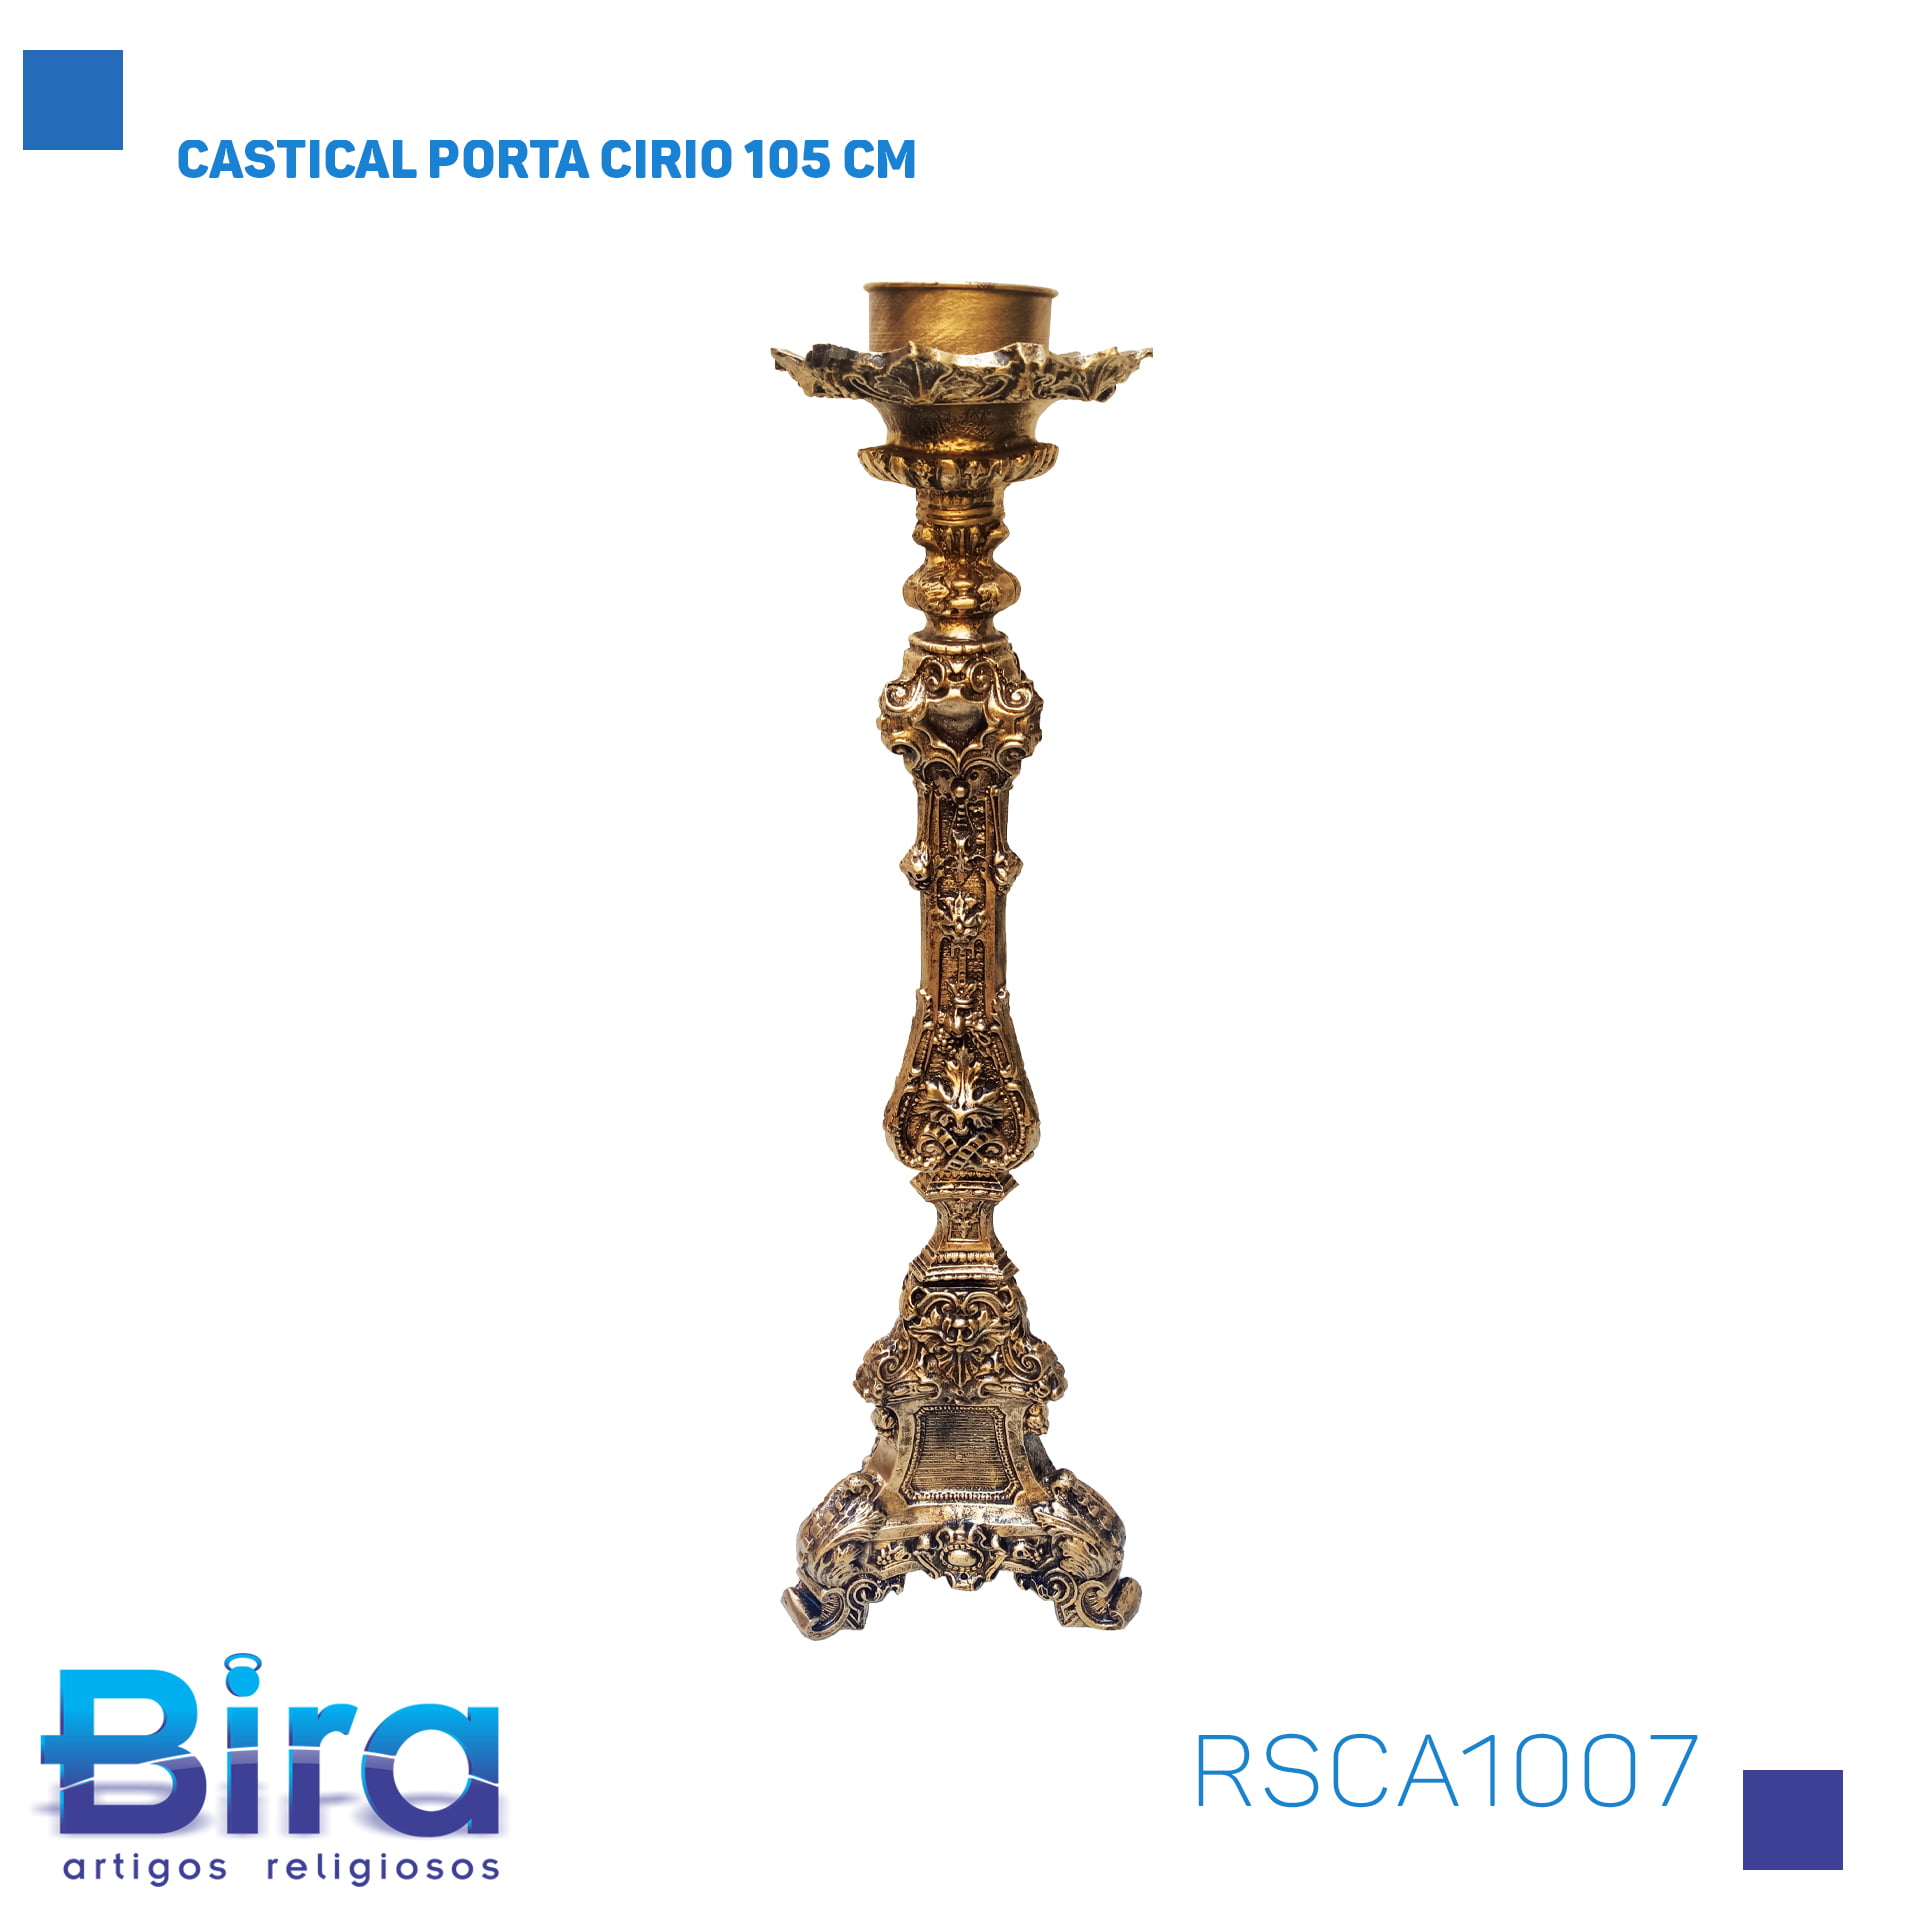 Bira Artigos Religiosos - CASTICAL PORTA CIRIO 105 CM CÓD.: RSCA1007